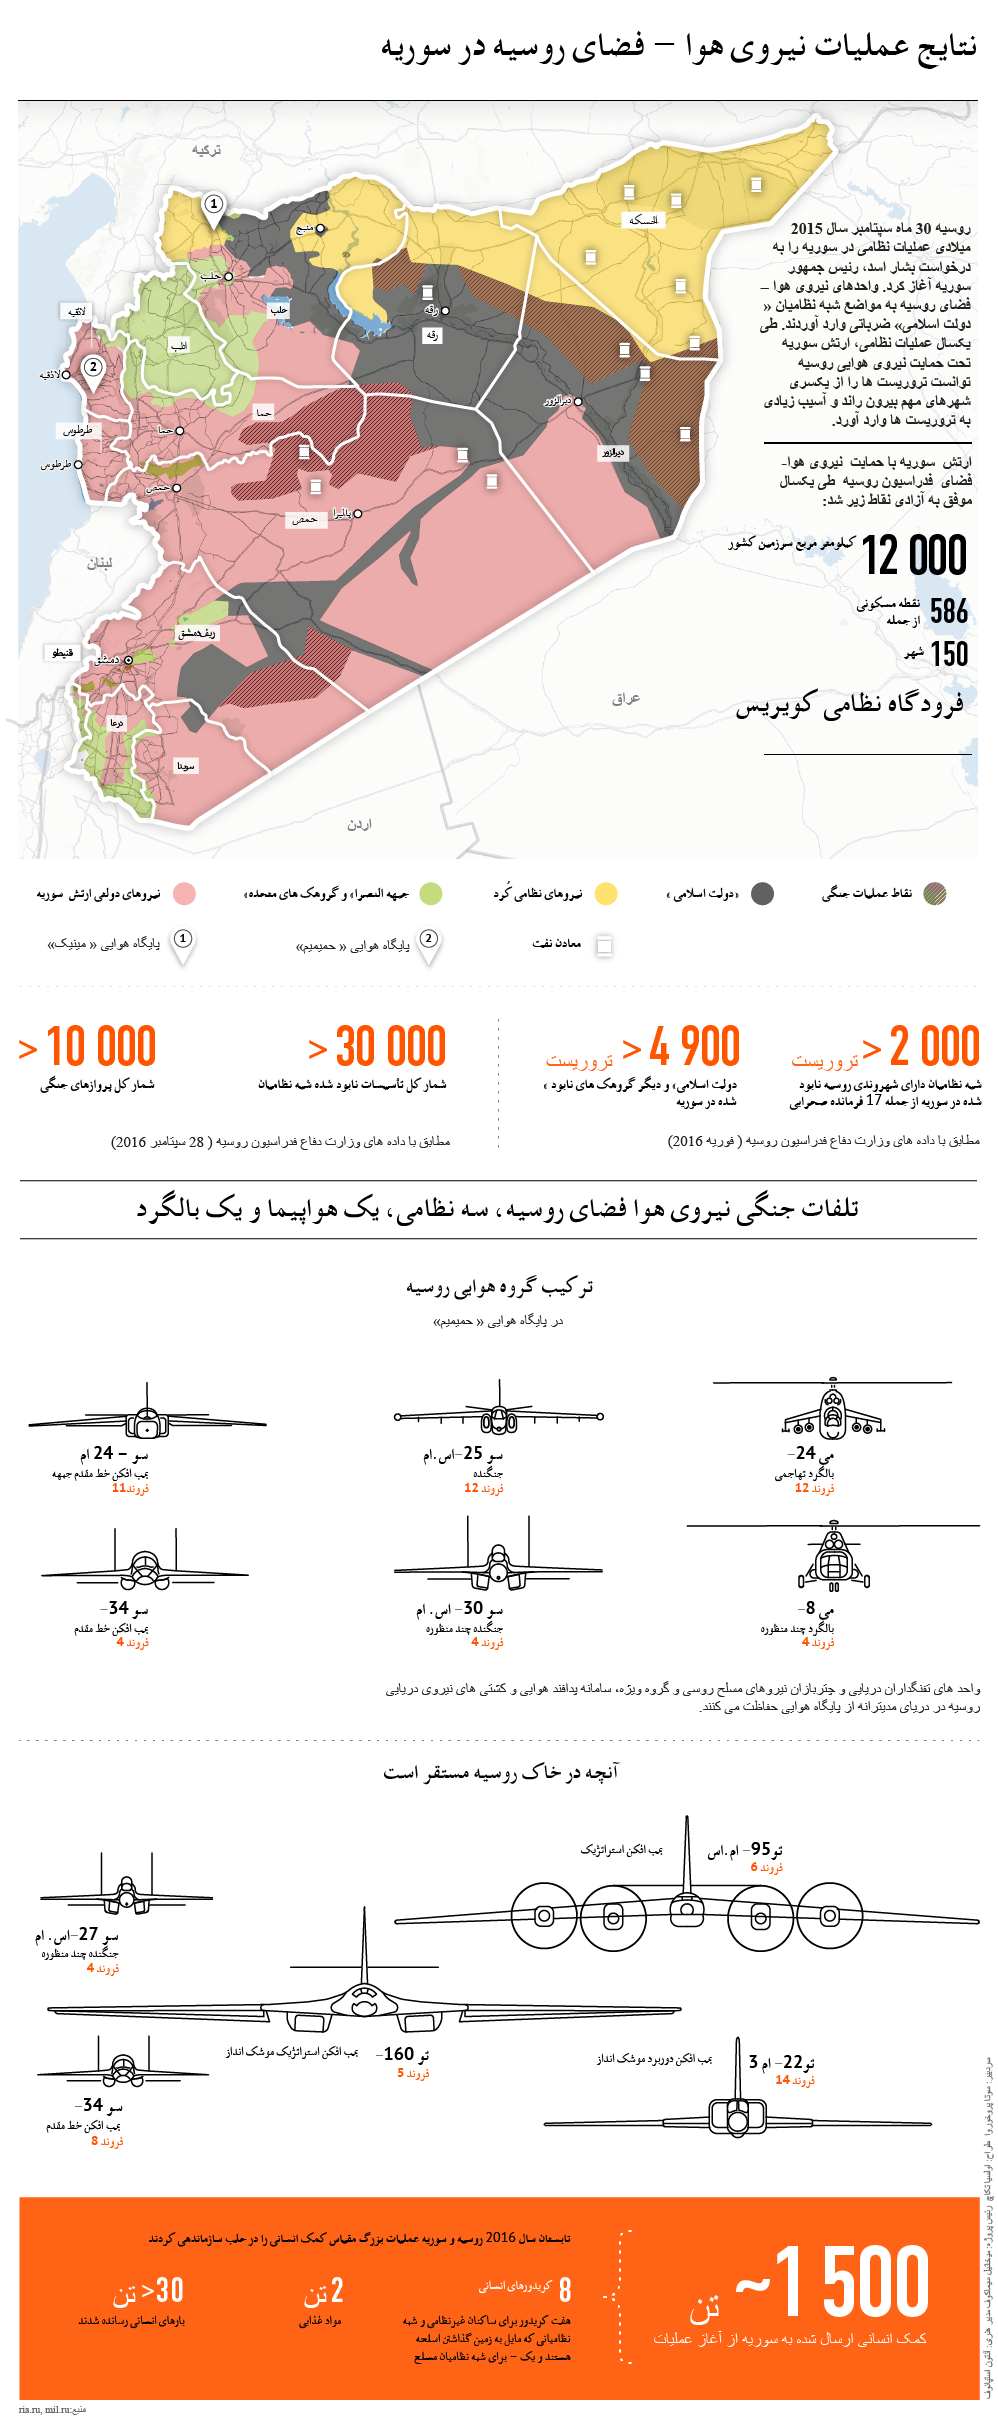 نتایج عملیات نیروی هوا – فضای روسیه در سوریه - اسپوتنیک ایران  